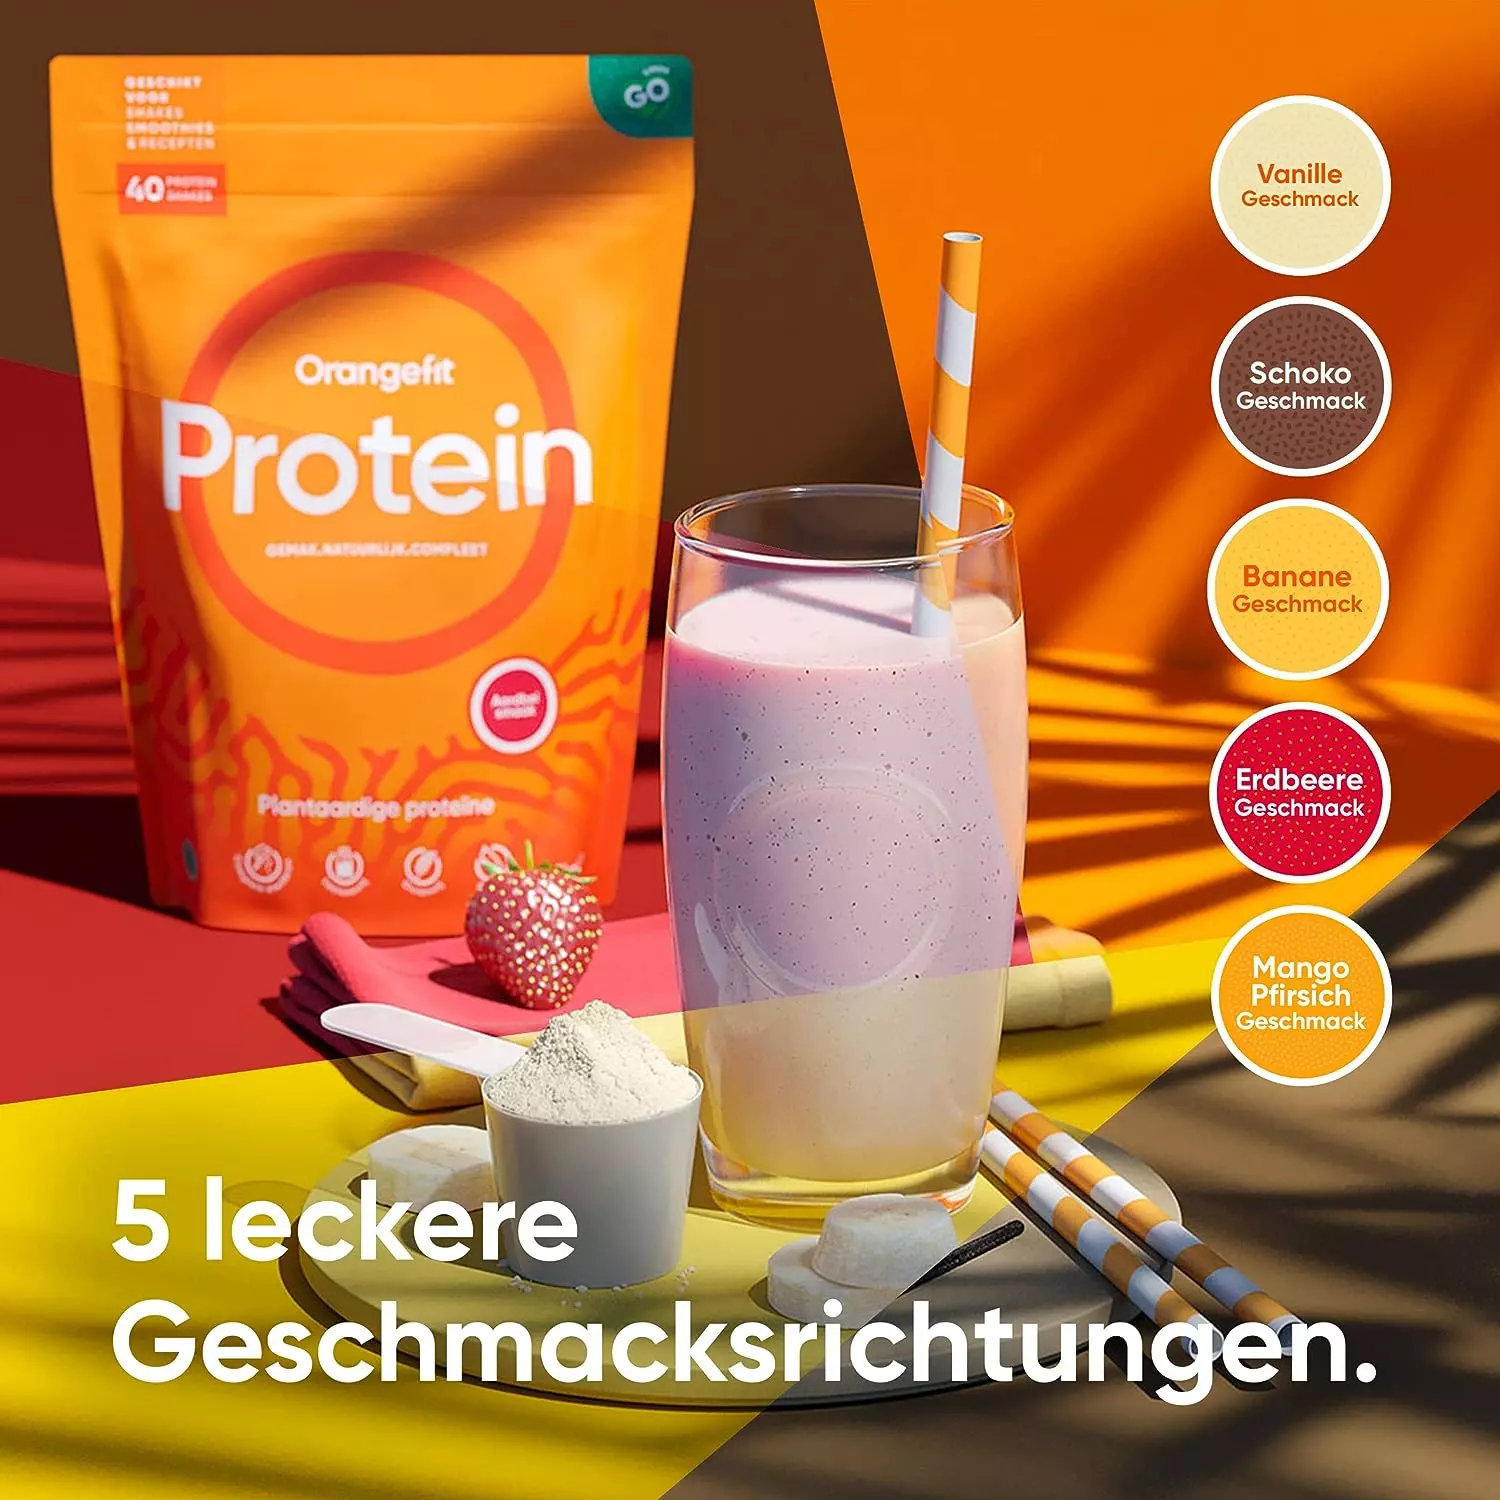 Orangefit Protein-Shake in fünf verschiedenen Geschmacksrichtungen